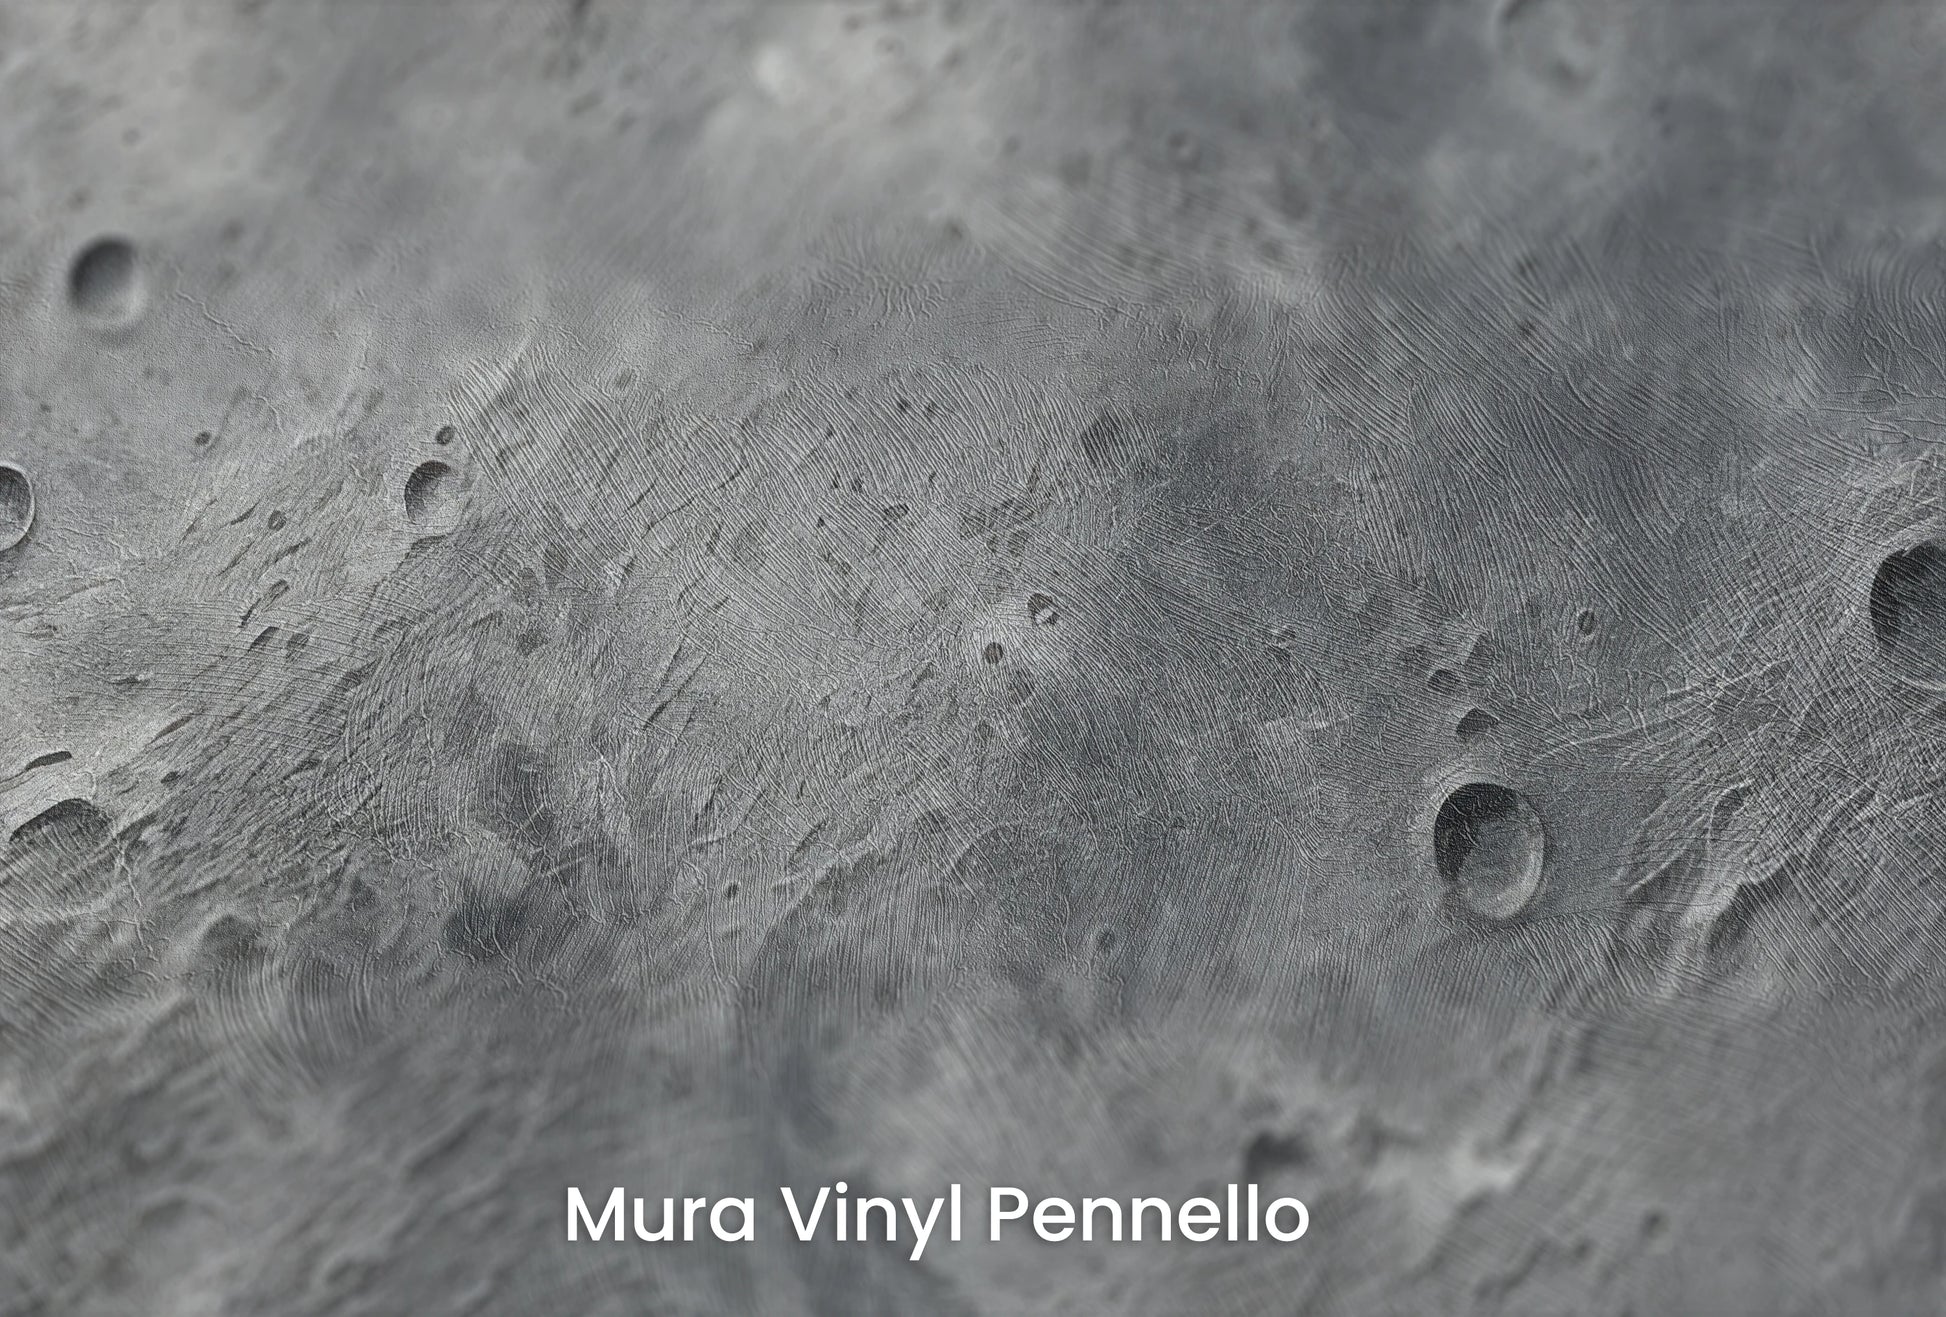 Zbliżenie na artystyczną fototapetę o nazwie Crater's Edge na podłożu Mura Vinyl Pennello - faktura pociągnięć pędzla malarskiego.